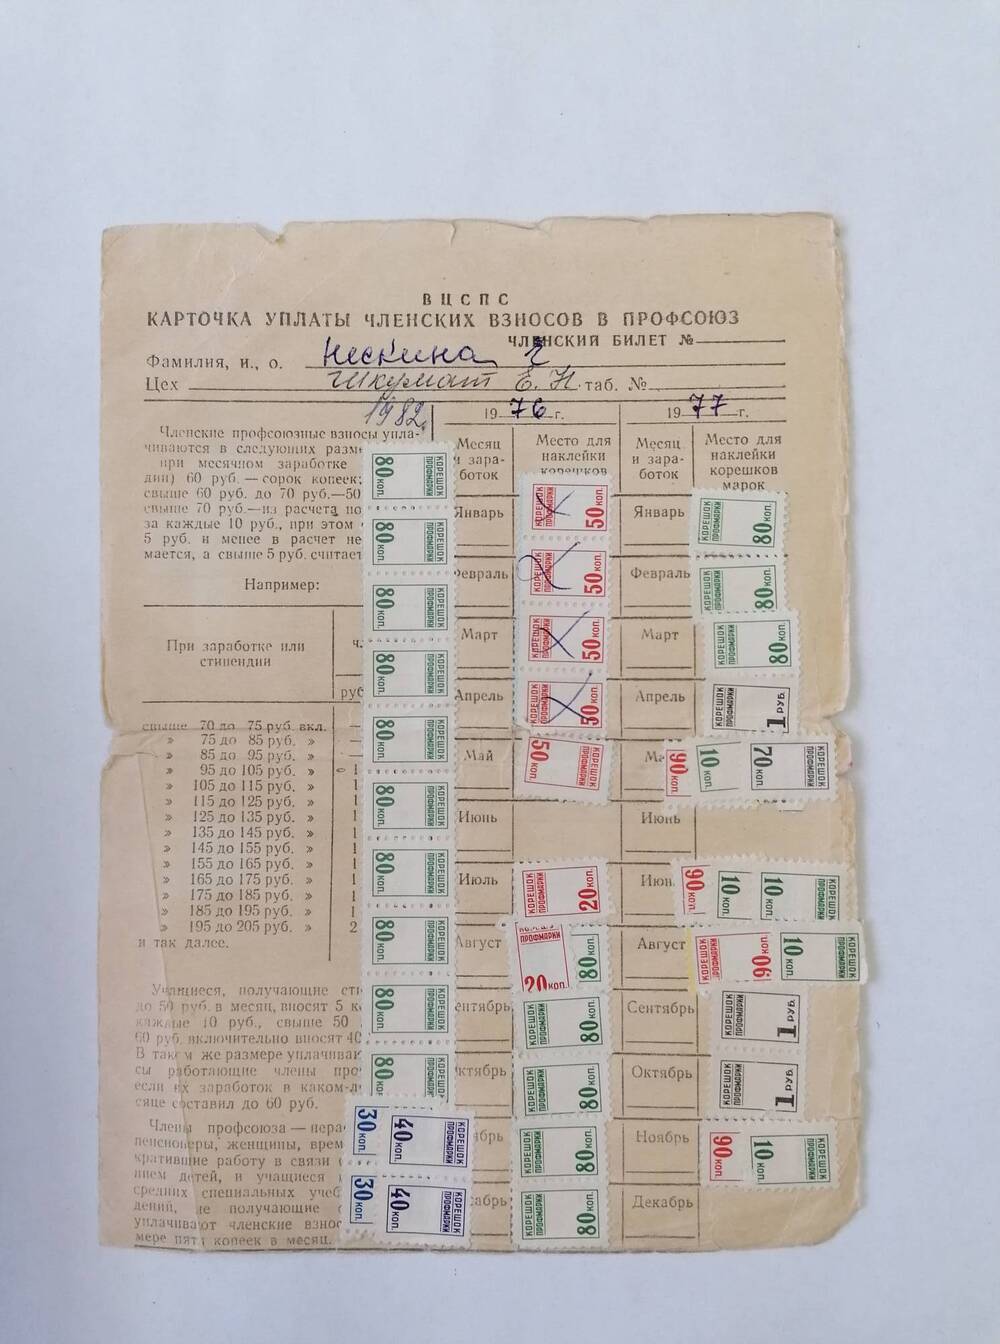 Карточка учетная членских взносов в профсоюз ВЦСПС Нескиной-Шкумат Е.Н. 1976-82 гг.